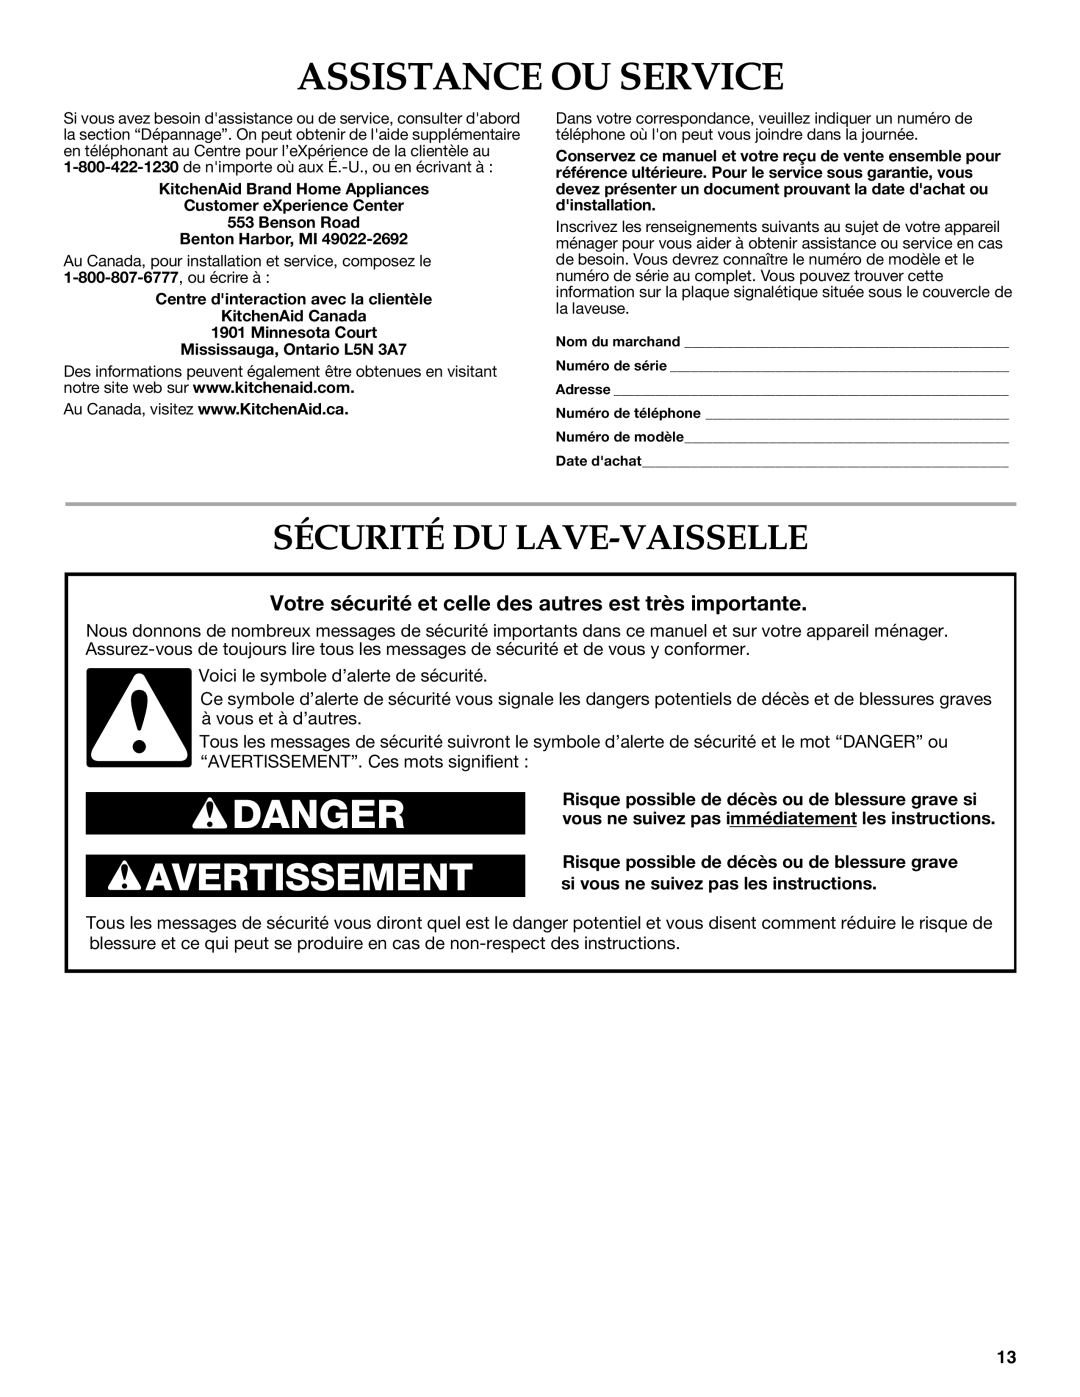 KitchenAid warranty Assistance OU Service, Sécurité DU LAVE-VAISSELLE 